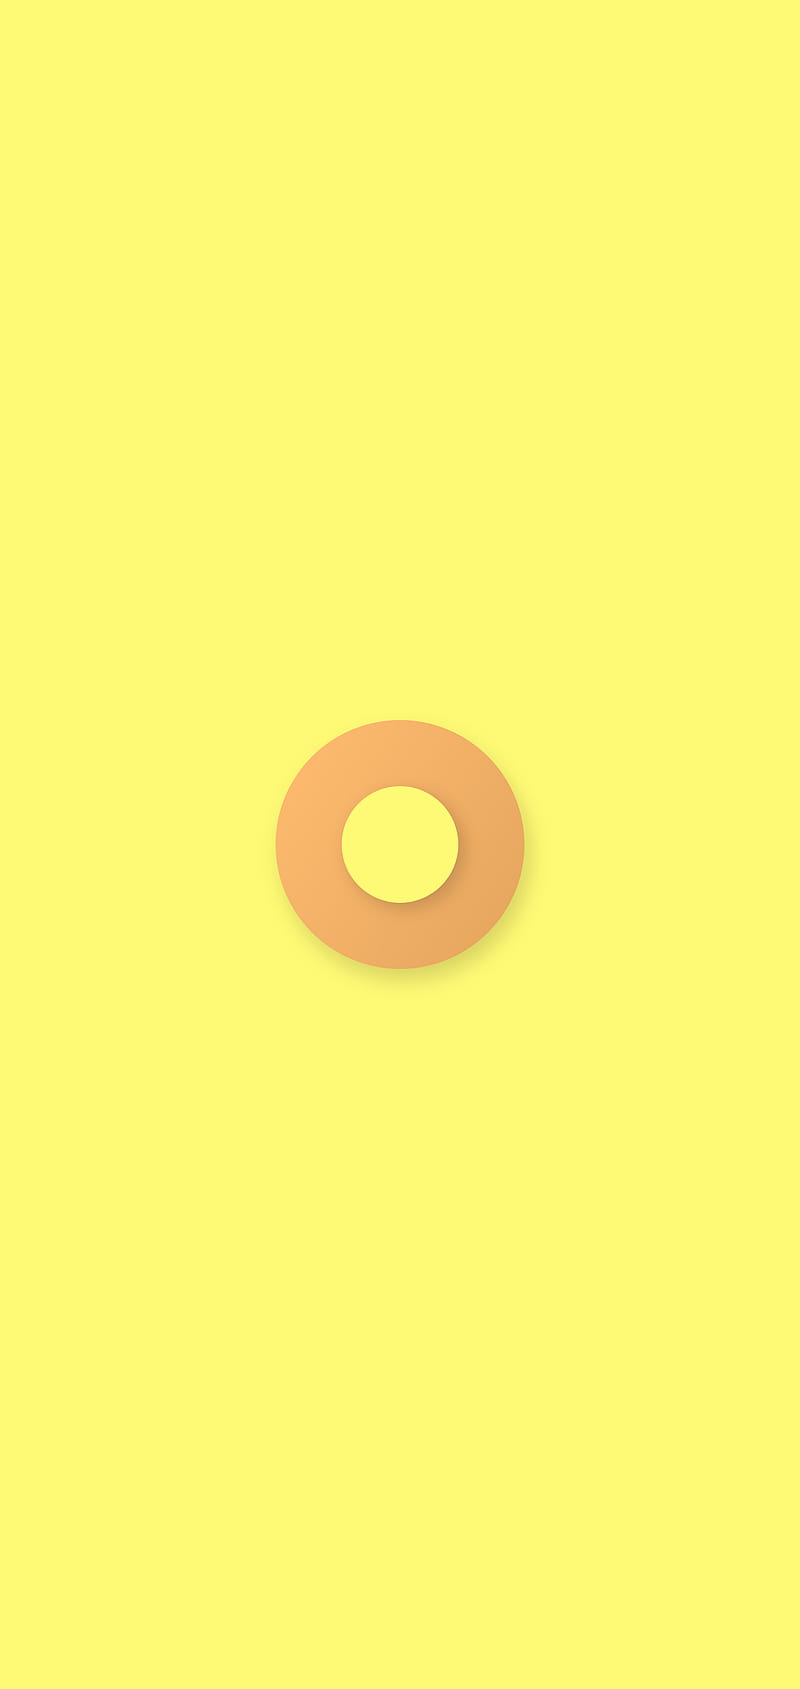 Minimal circle, desenho, flat, lemon, orange, premium, yellow, HD ...